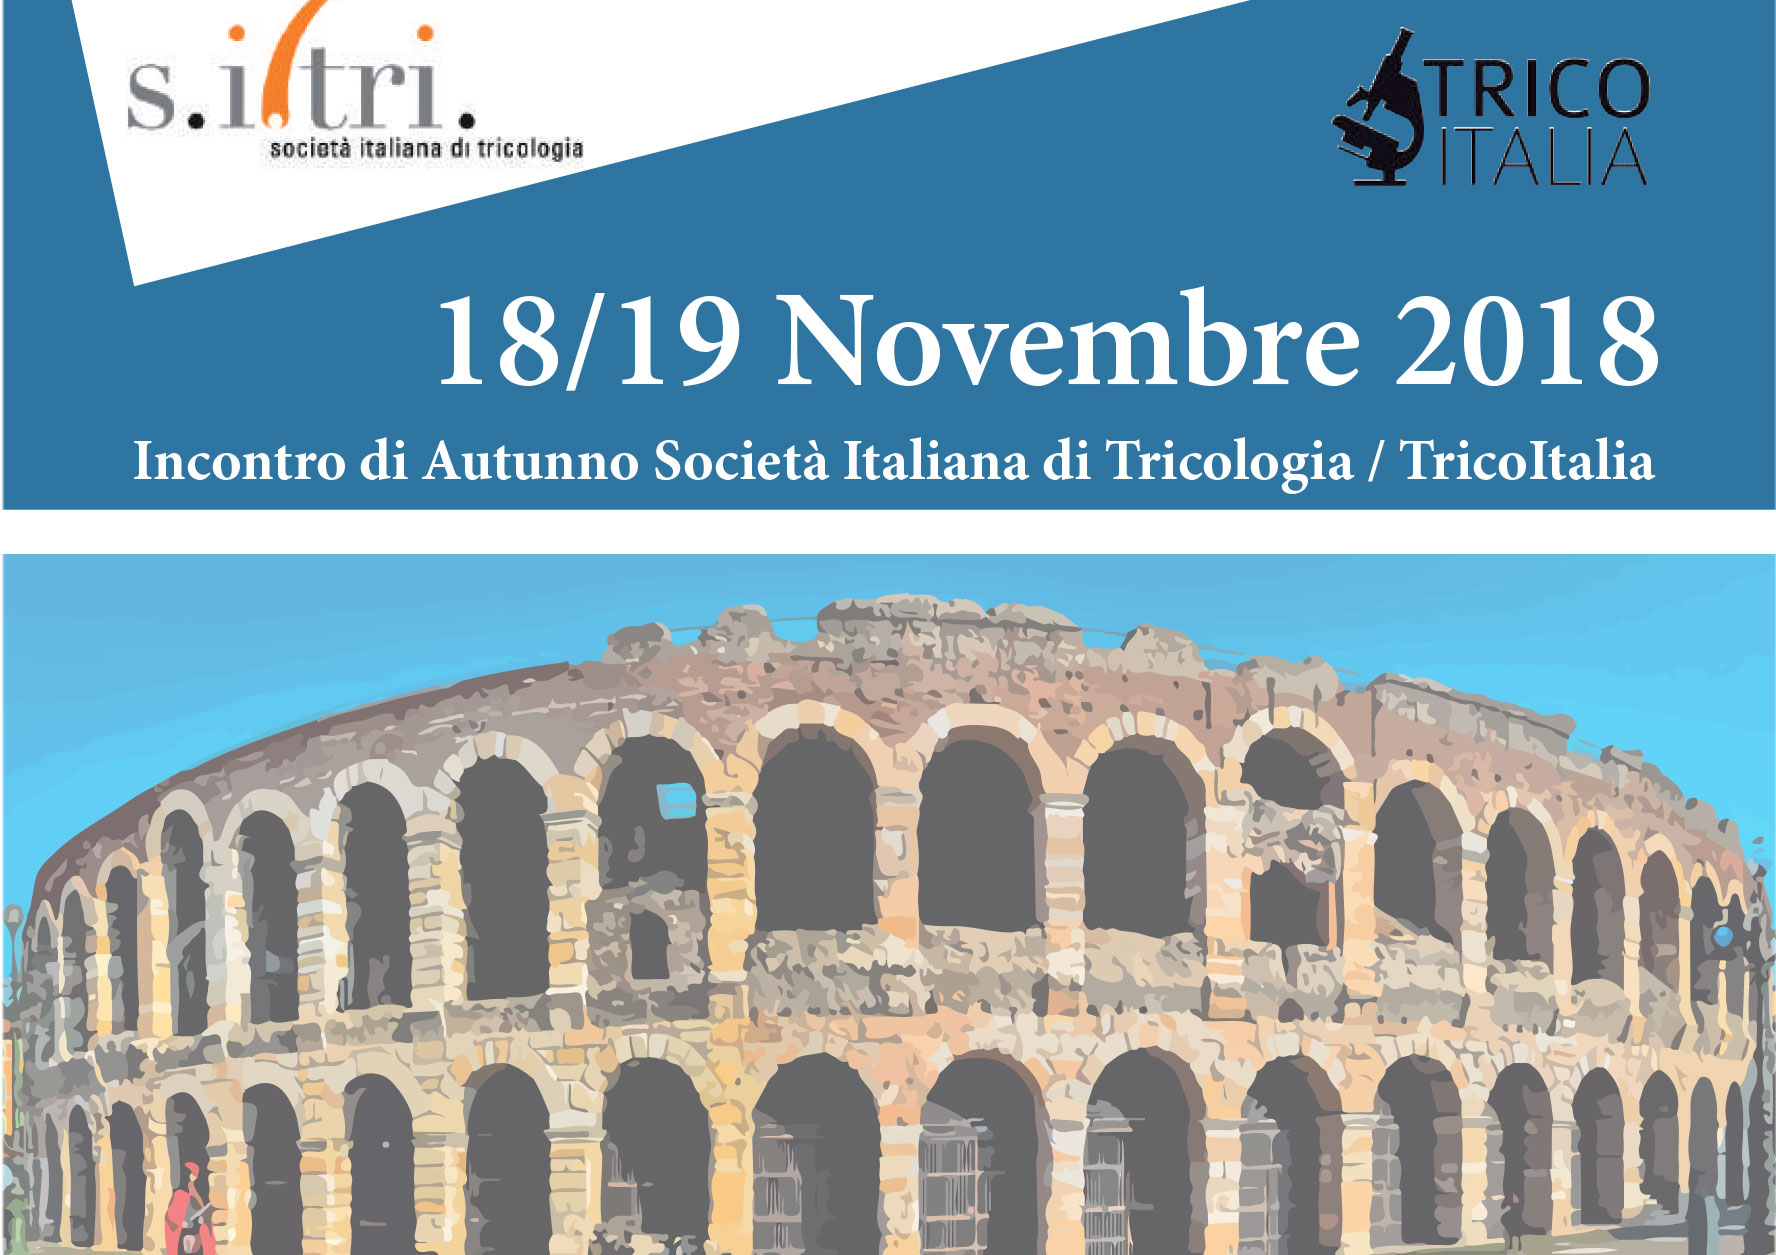 Incontro di Autunno della Società Italiana di Tricologia: 18-19 novembre 2018, Verona